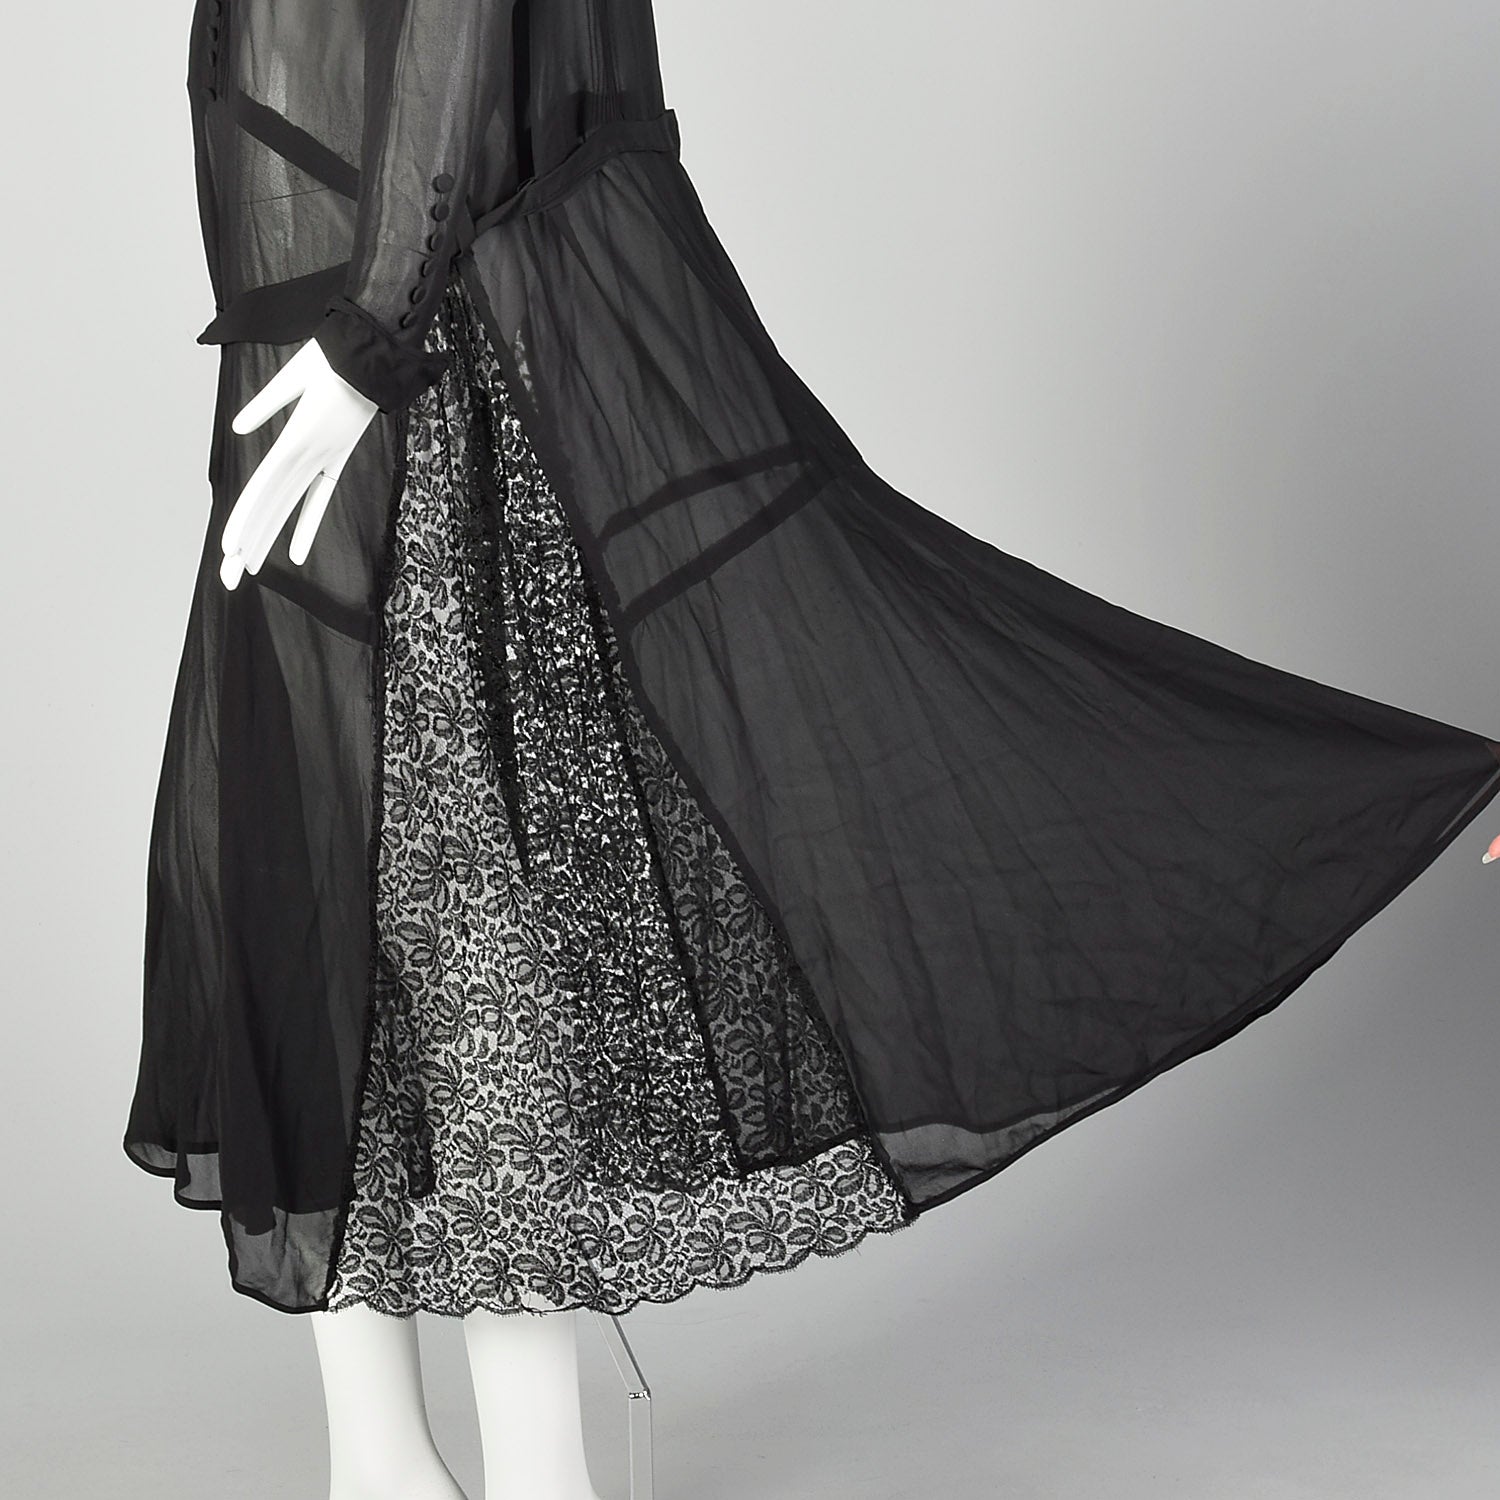 XXL 1920s Black Dress